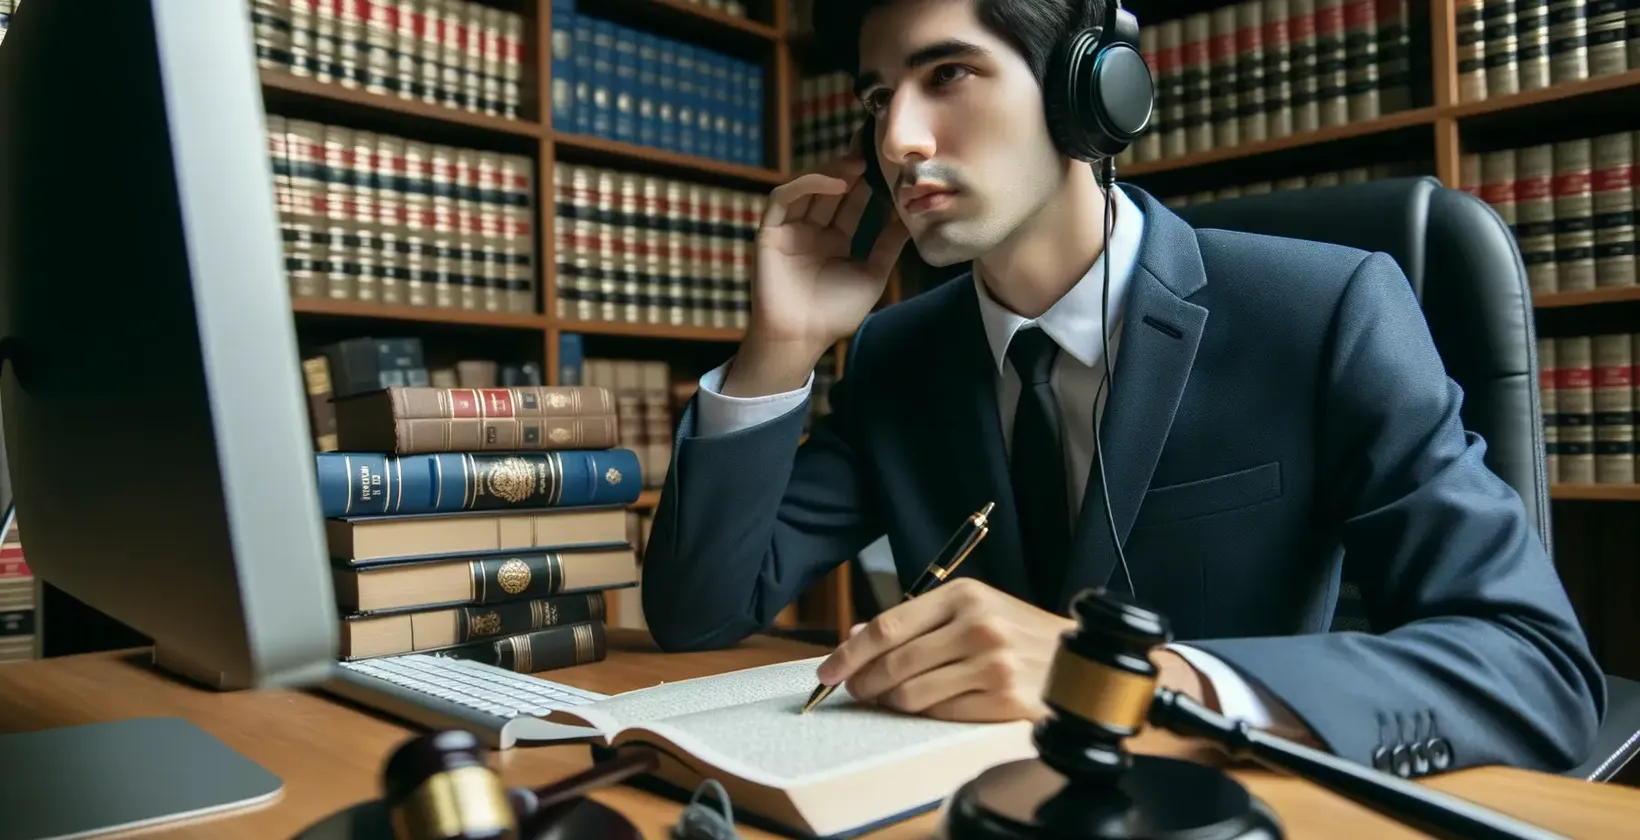 Jogi átírási szolgáltatásokat mutat be egy szakember fejhallgatóval egy jogi könyvtárban.